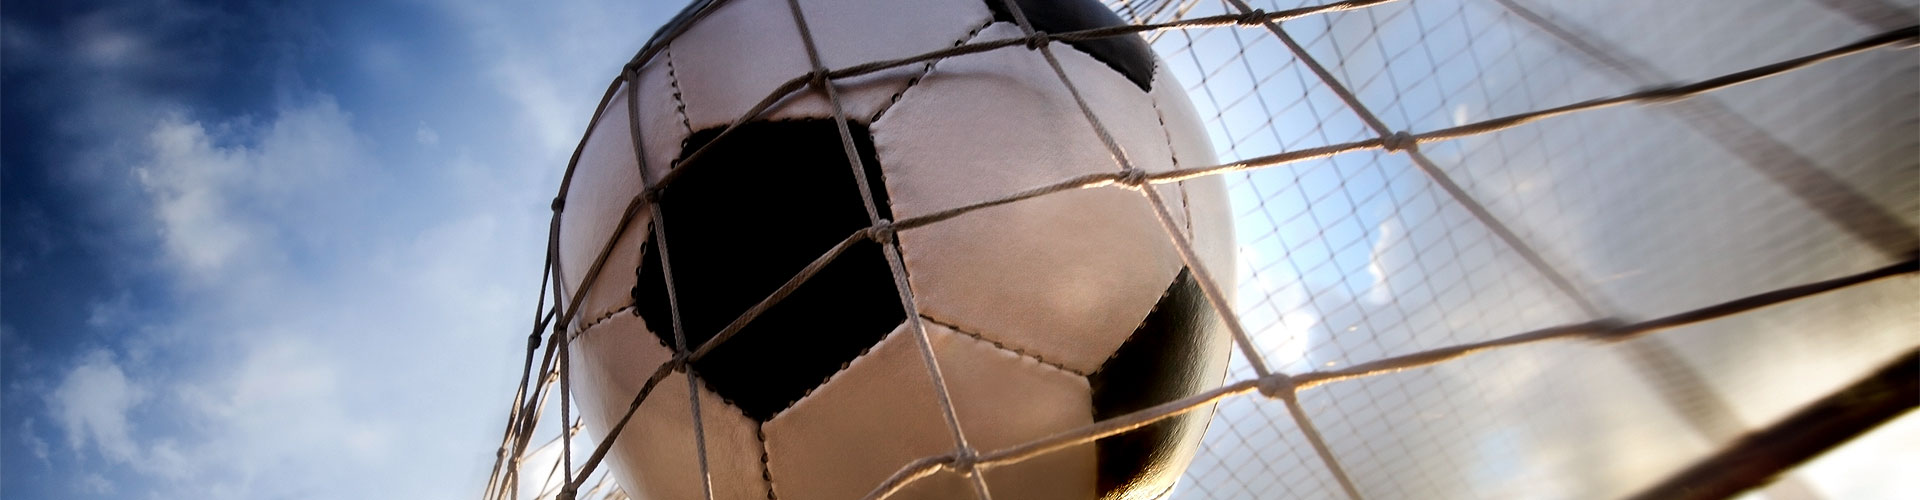 Ver la Eurocopa 2020 de fútbol en vivo en Pinto